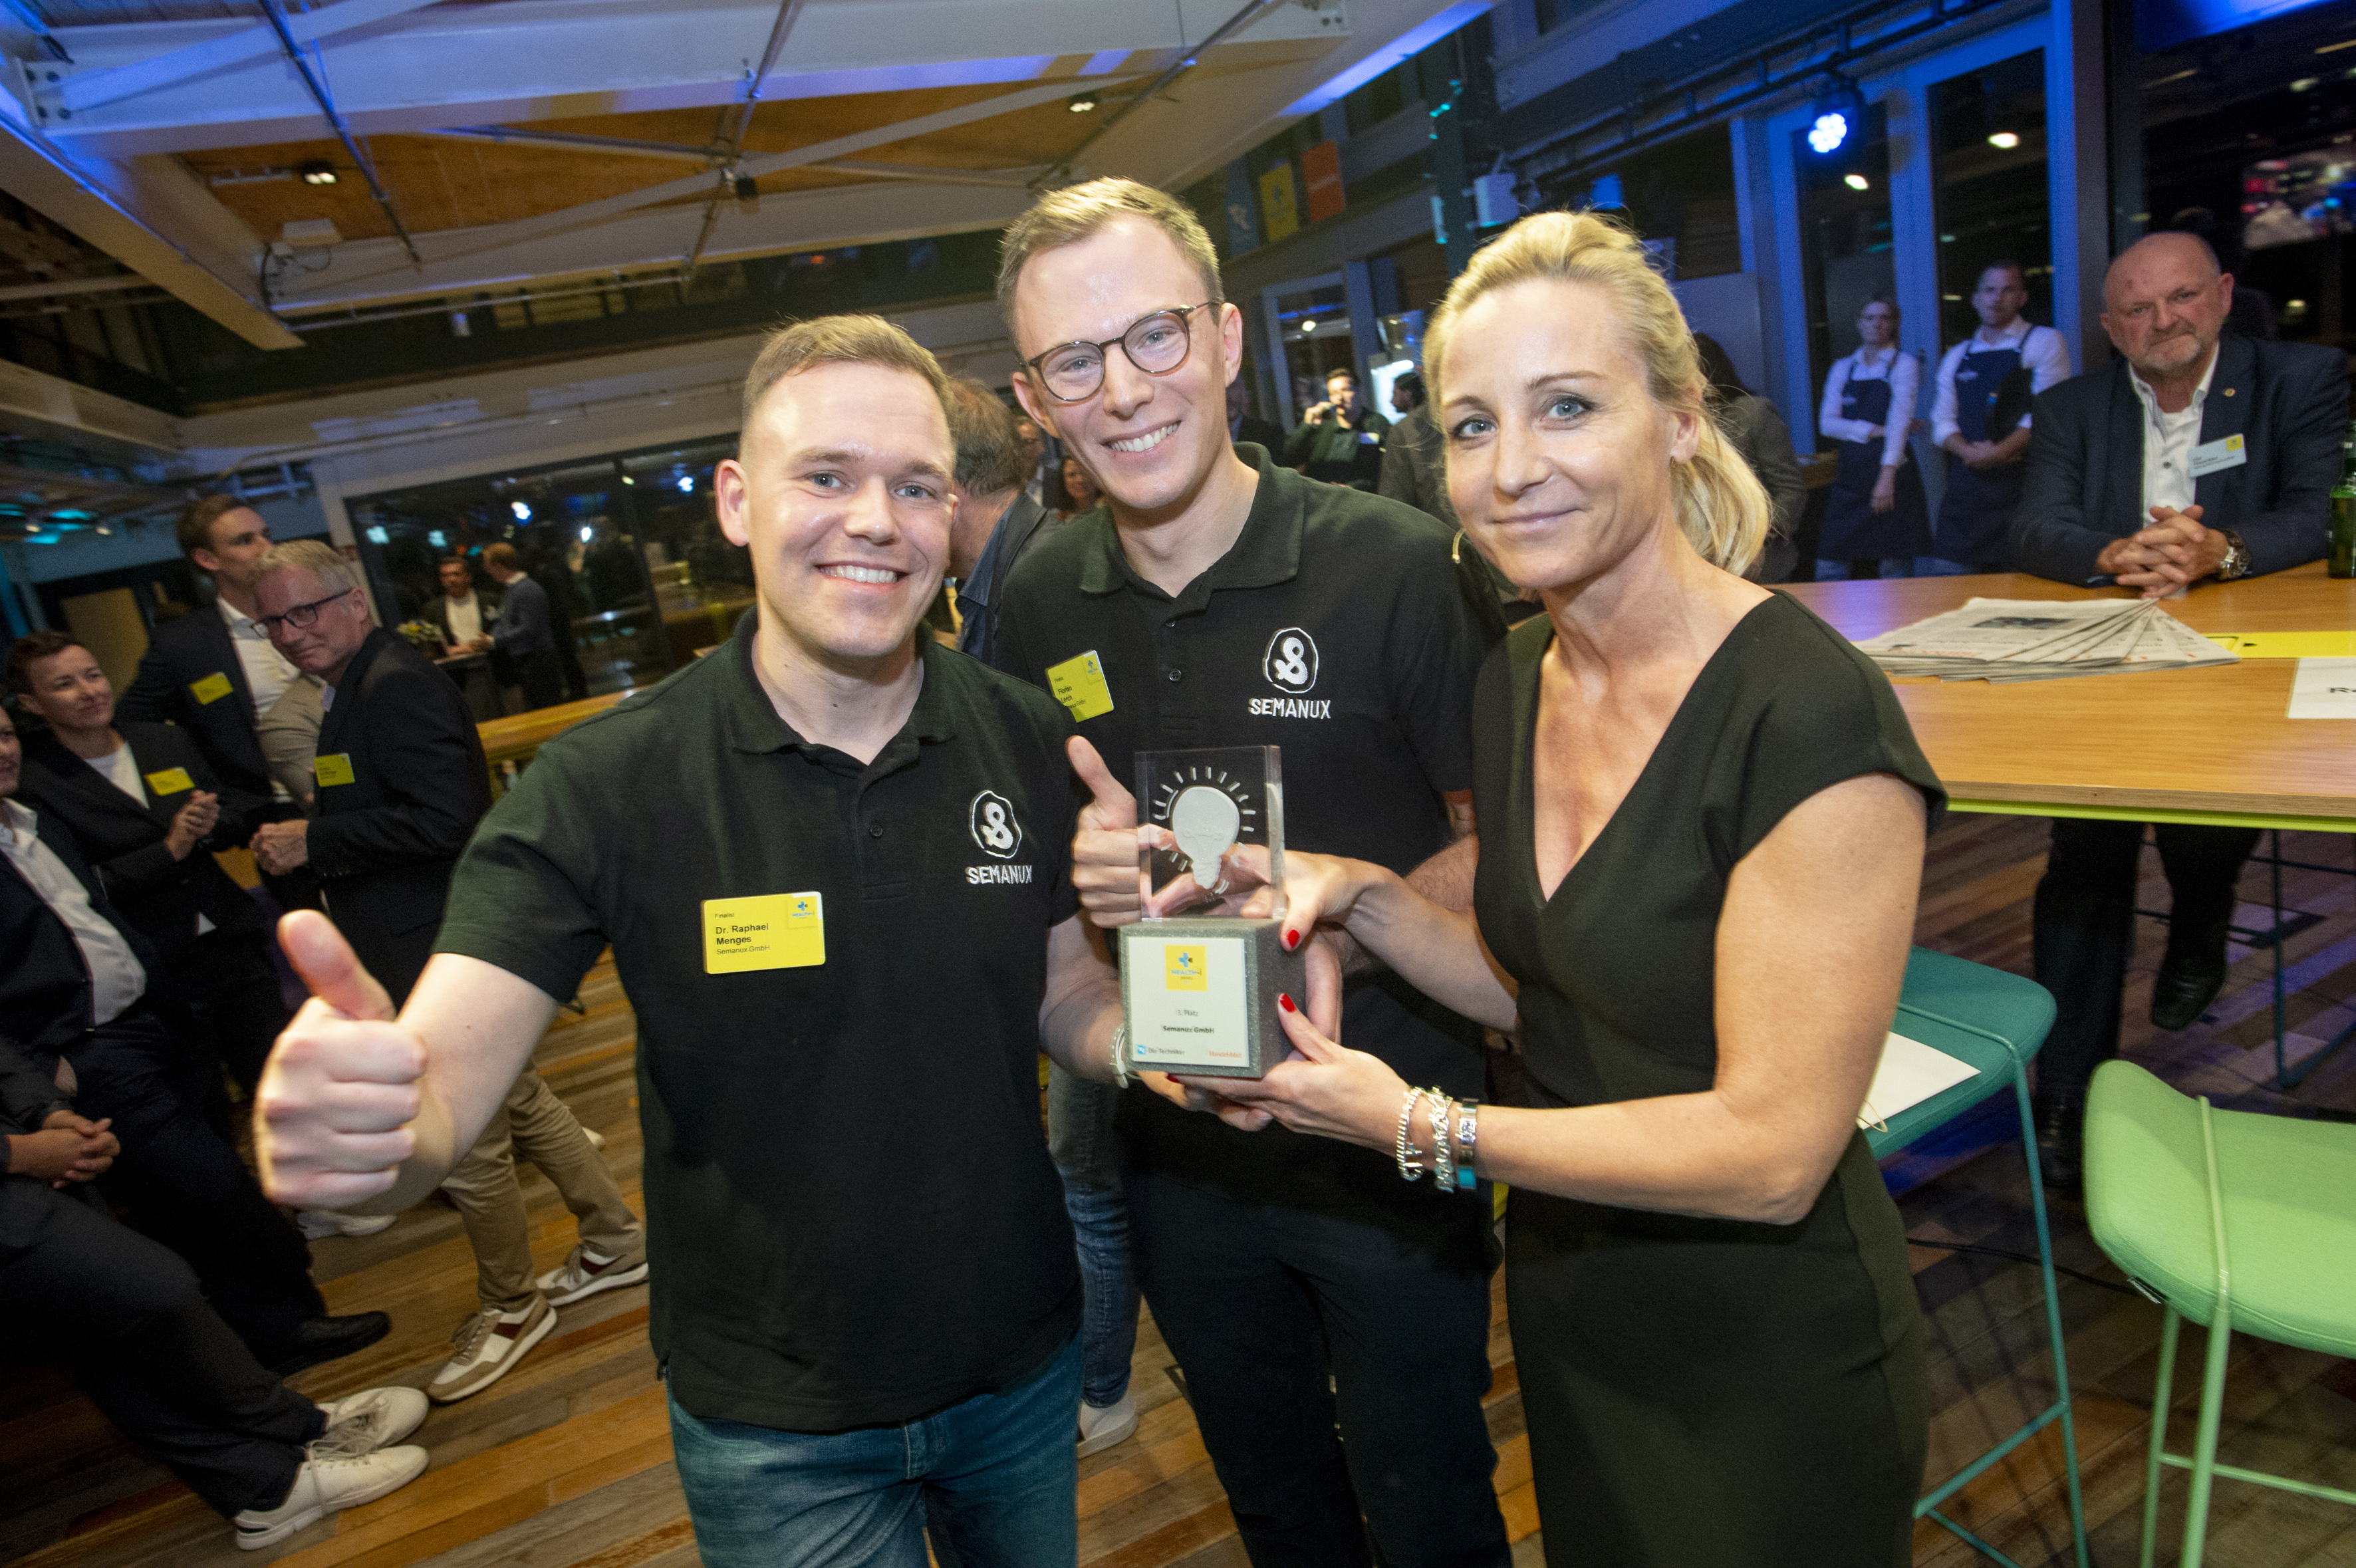 Das Startup Semanux belegte Platz 3 und freute sich gemeinsam mit Jurymitglied Vanessa Schmoranzer, Foto: Marc-Steffen Unger